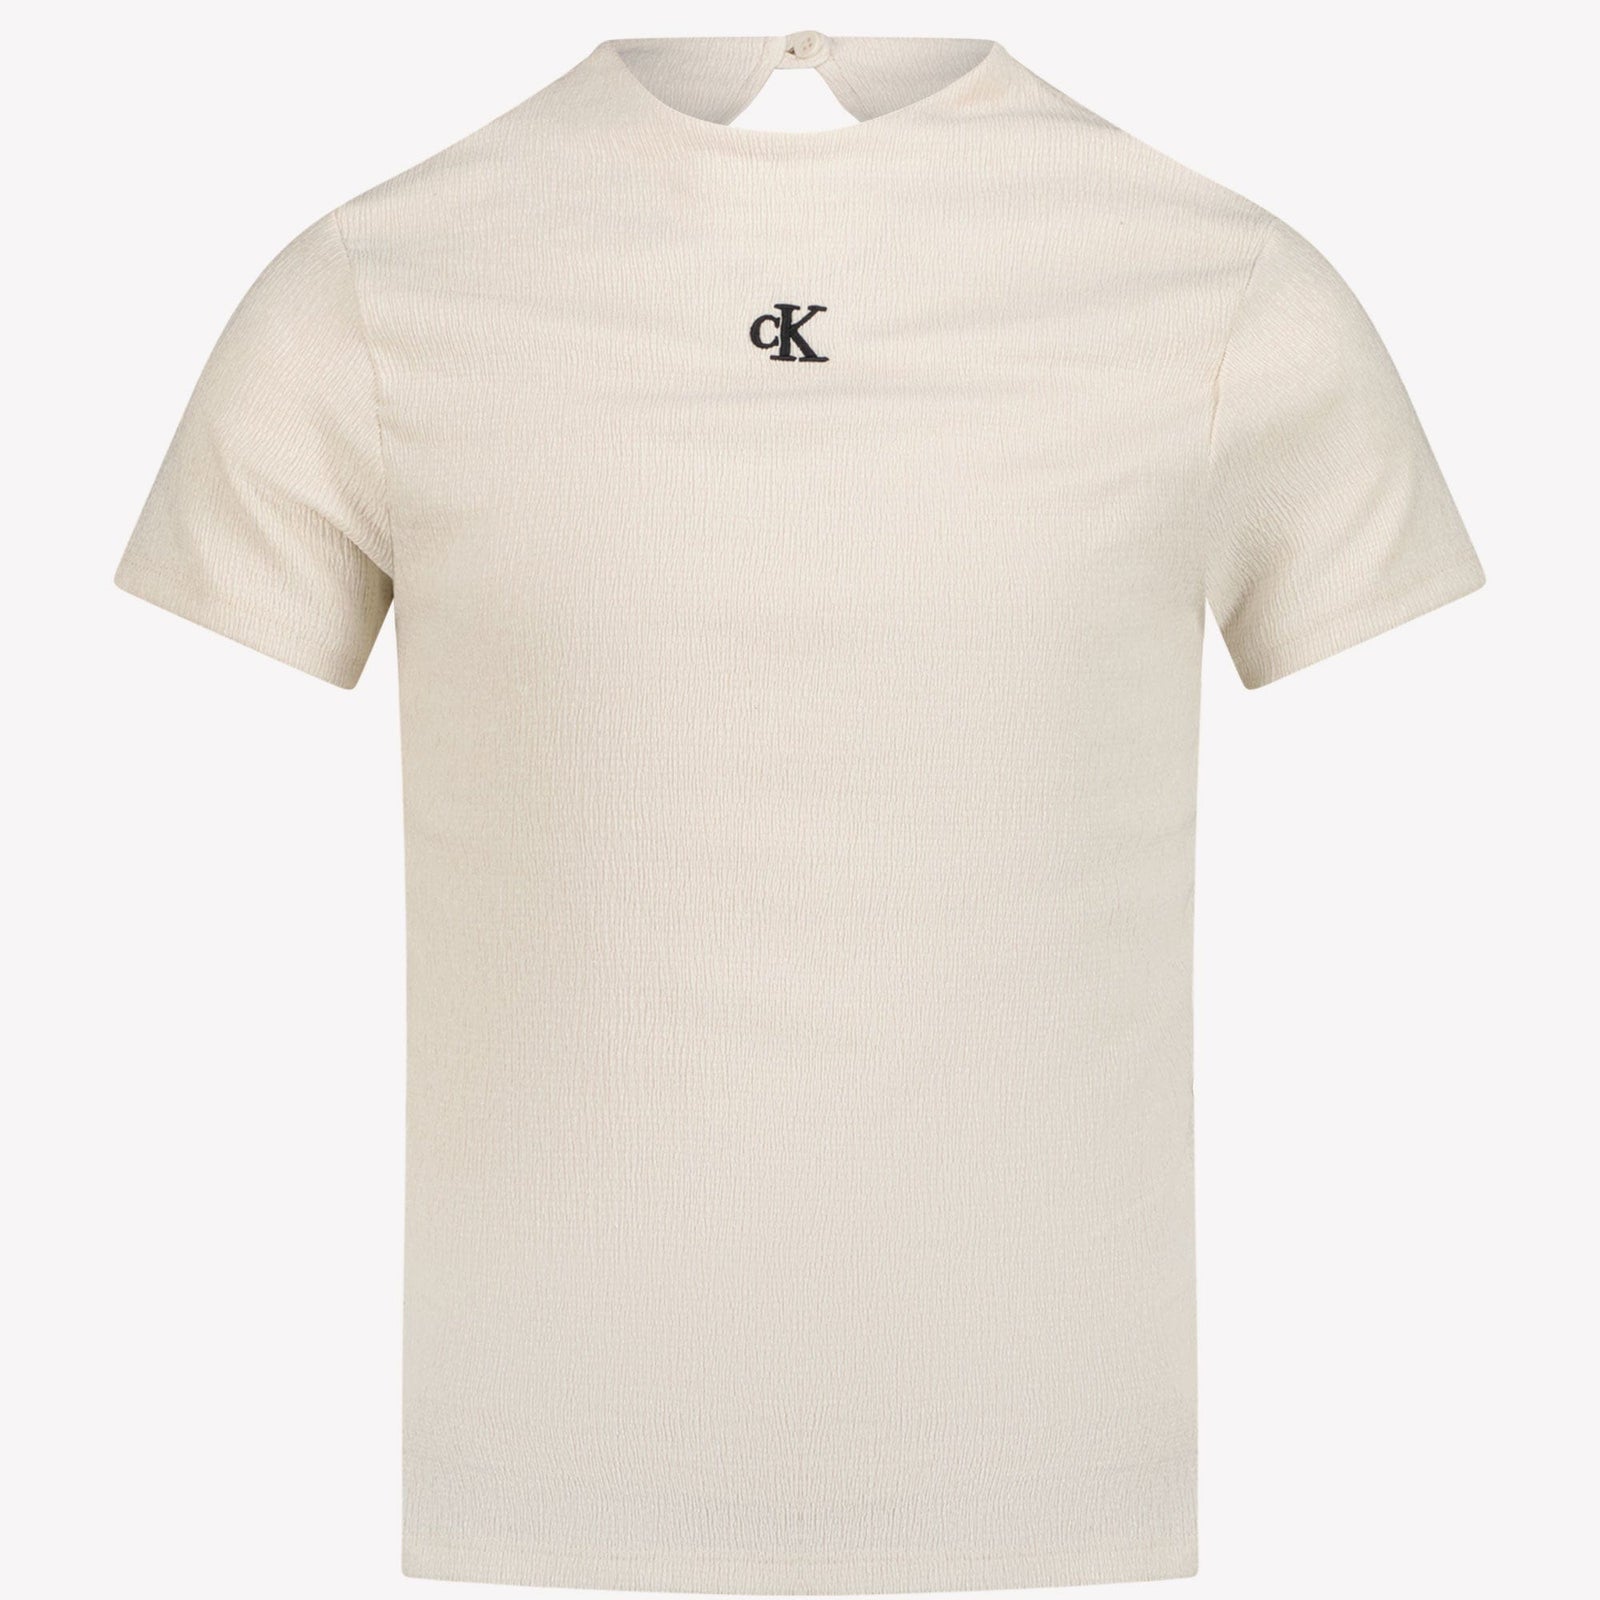 Calvin Klein Kinder Meisjes T-Shirt Wit 4Y